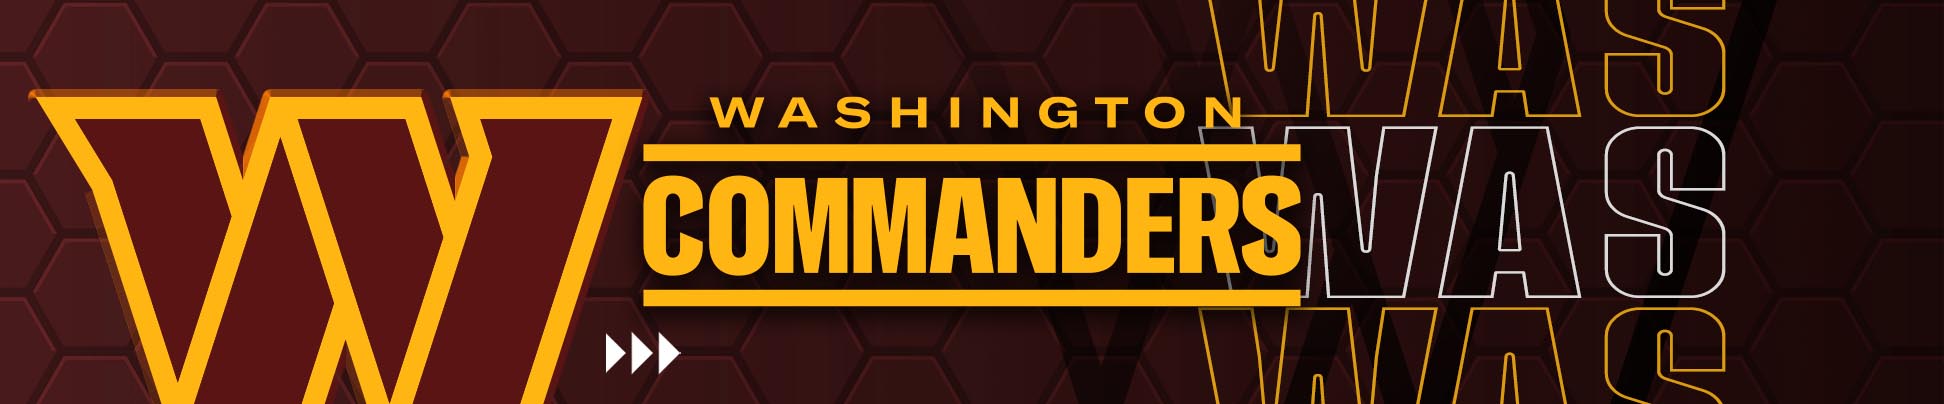 Washington Commanders Memorabilia & Collectibles